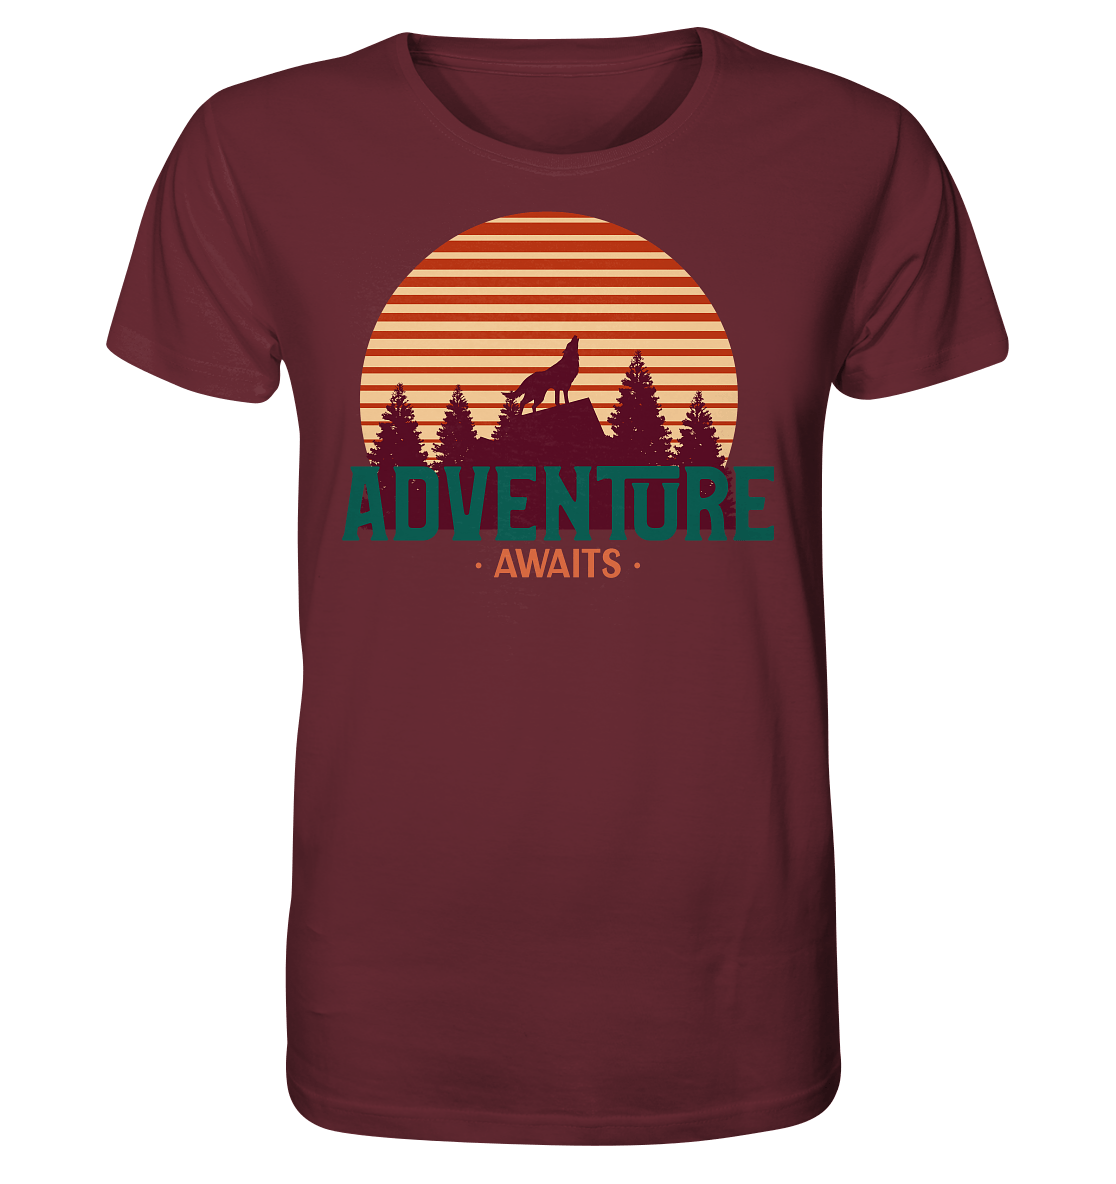 Herren T-Shirt mit Design der wilden Natur in Flat Style Bergmensch und Beschriftung "Adventure Awaits".